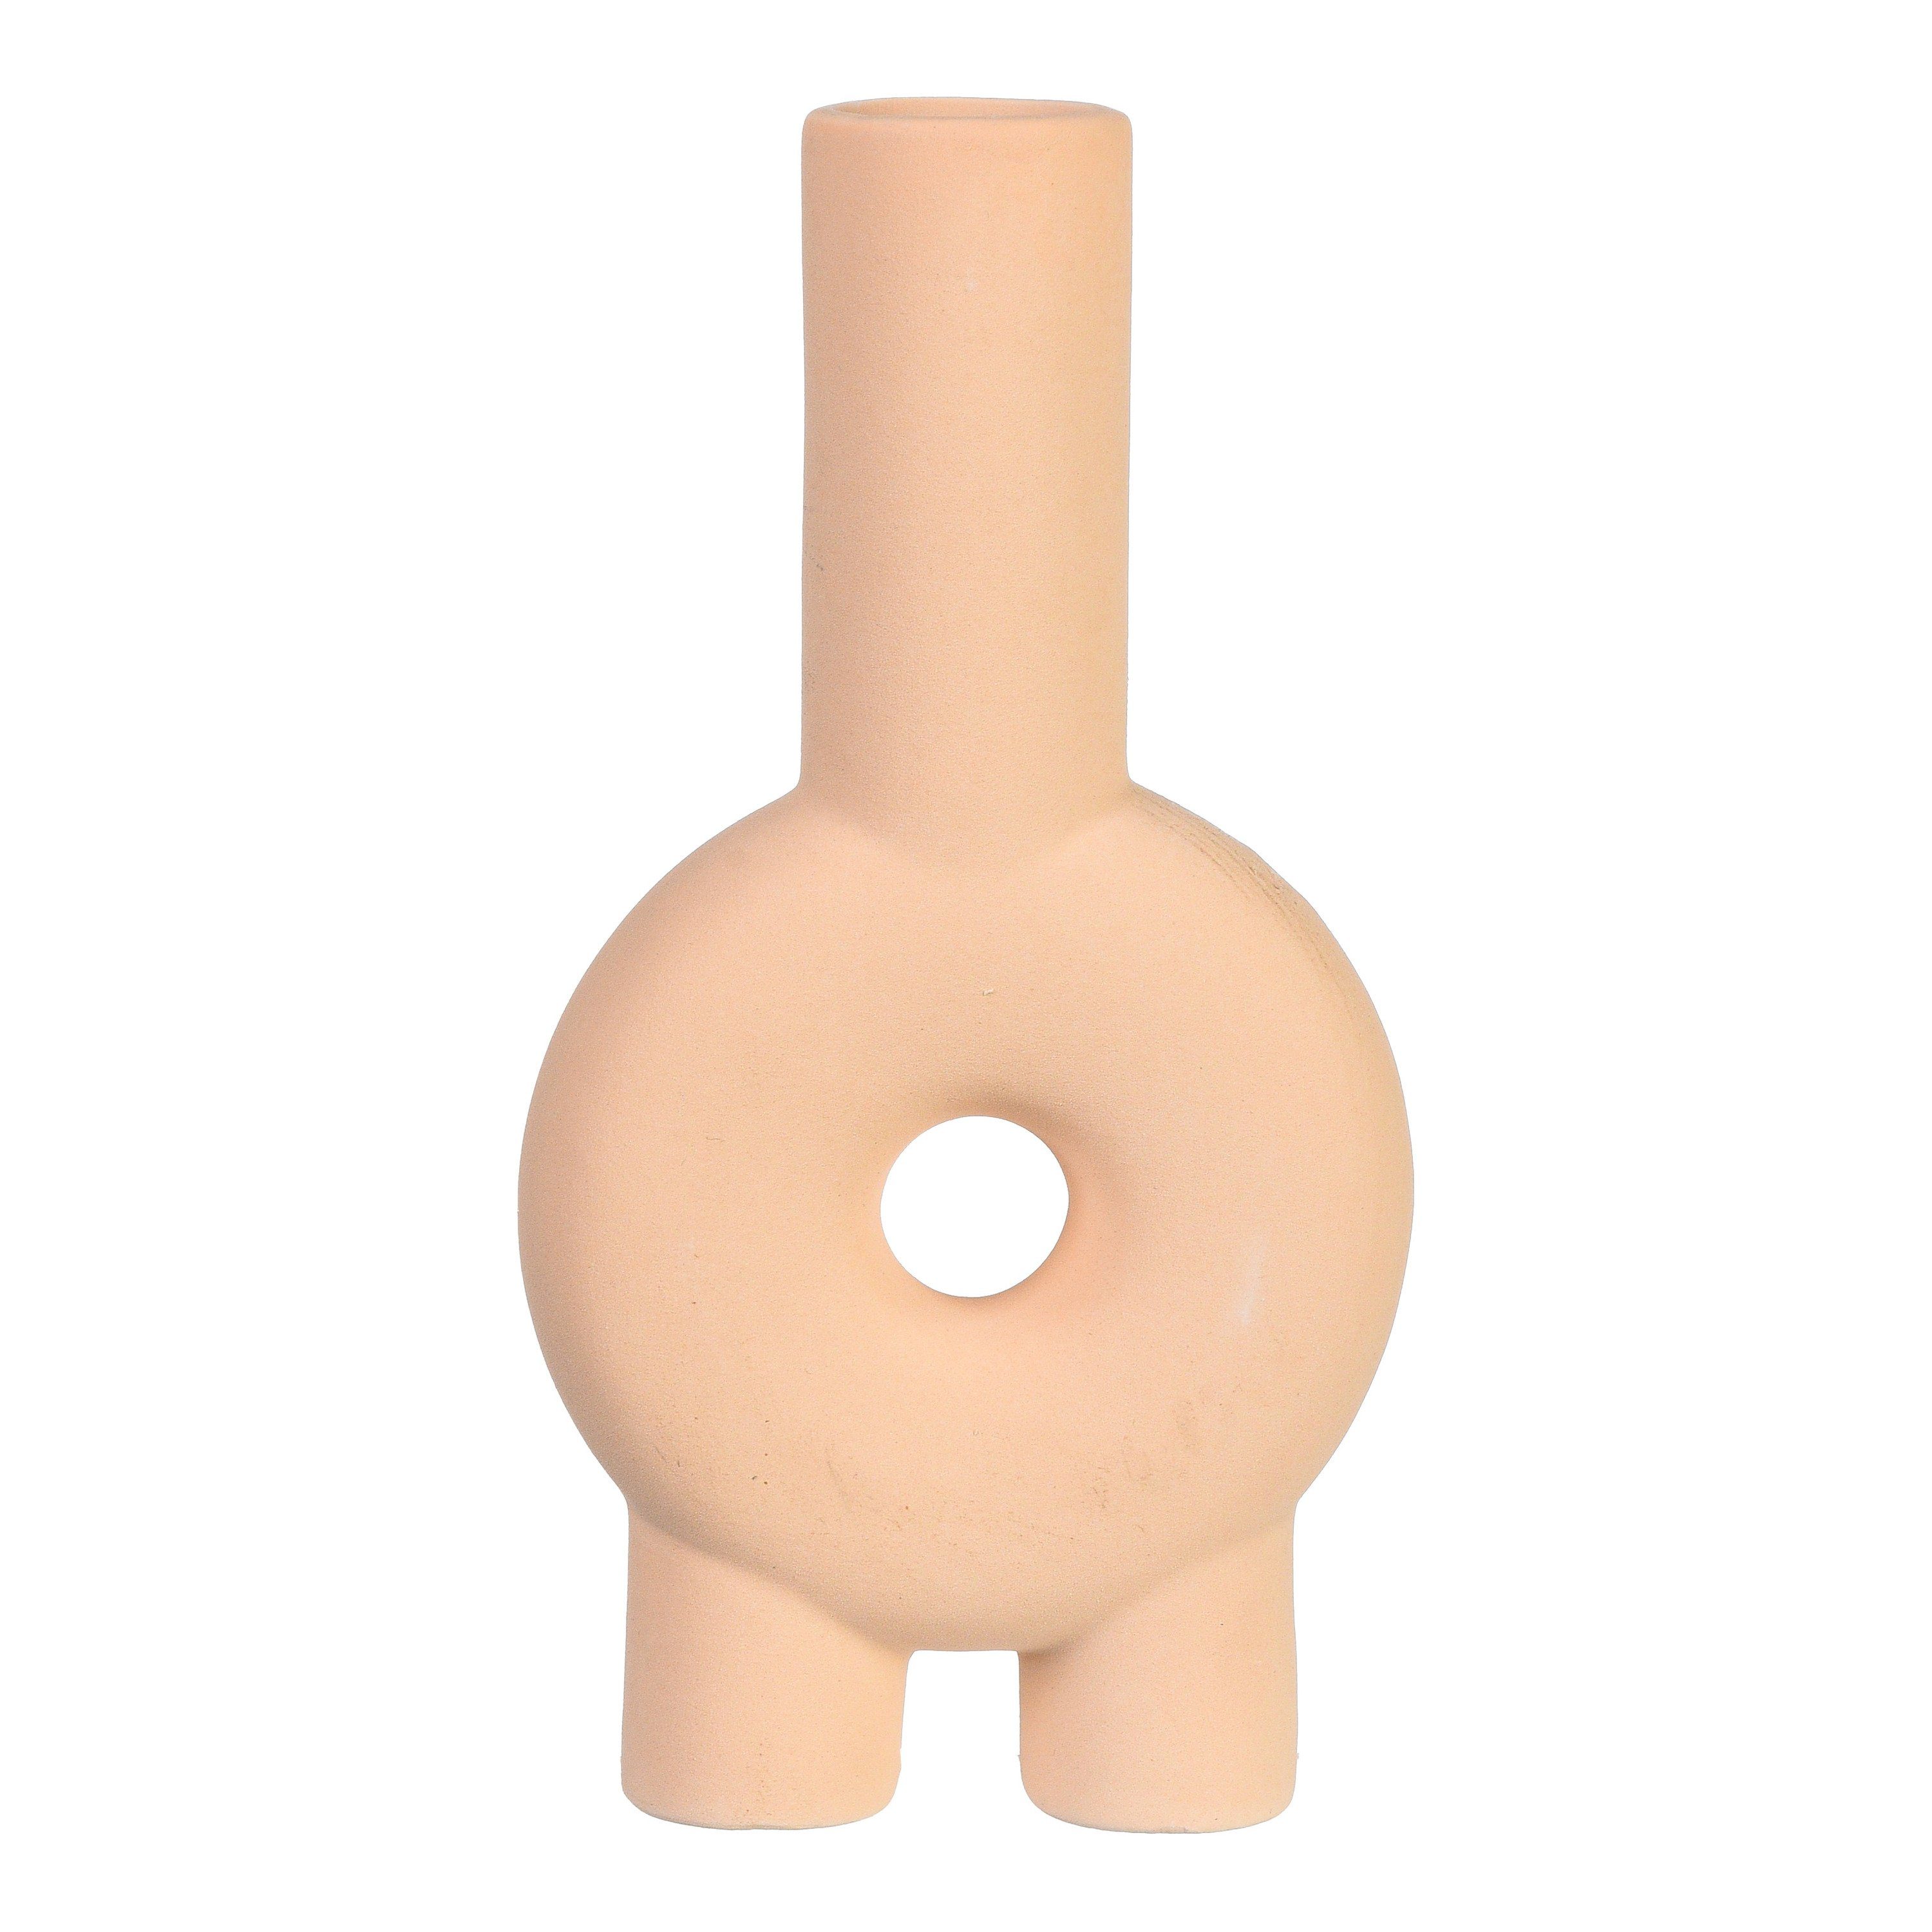 Depot Dekovase Vase Figure (Packung, 1 Stück Vase), aus Dolomit, B 11.5 Zentimeter, H 22 Zentimeter, T 4.5 Zentimeter